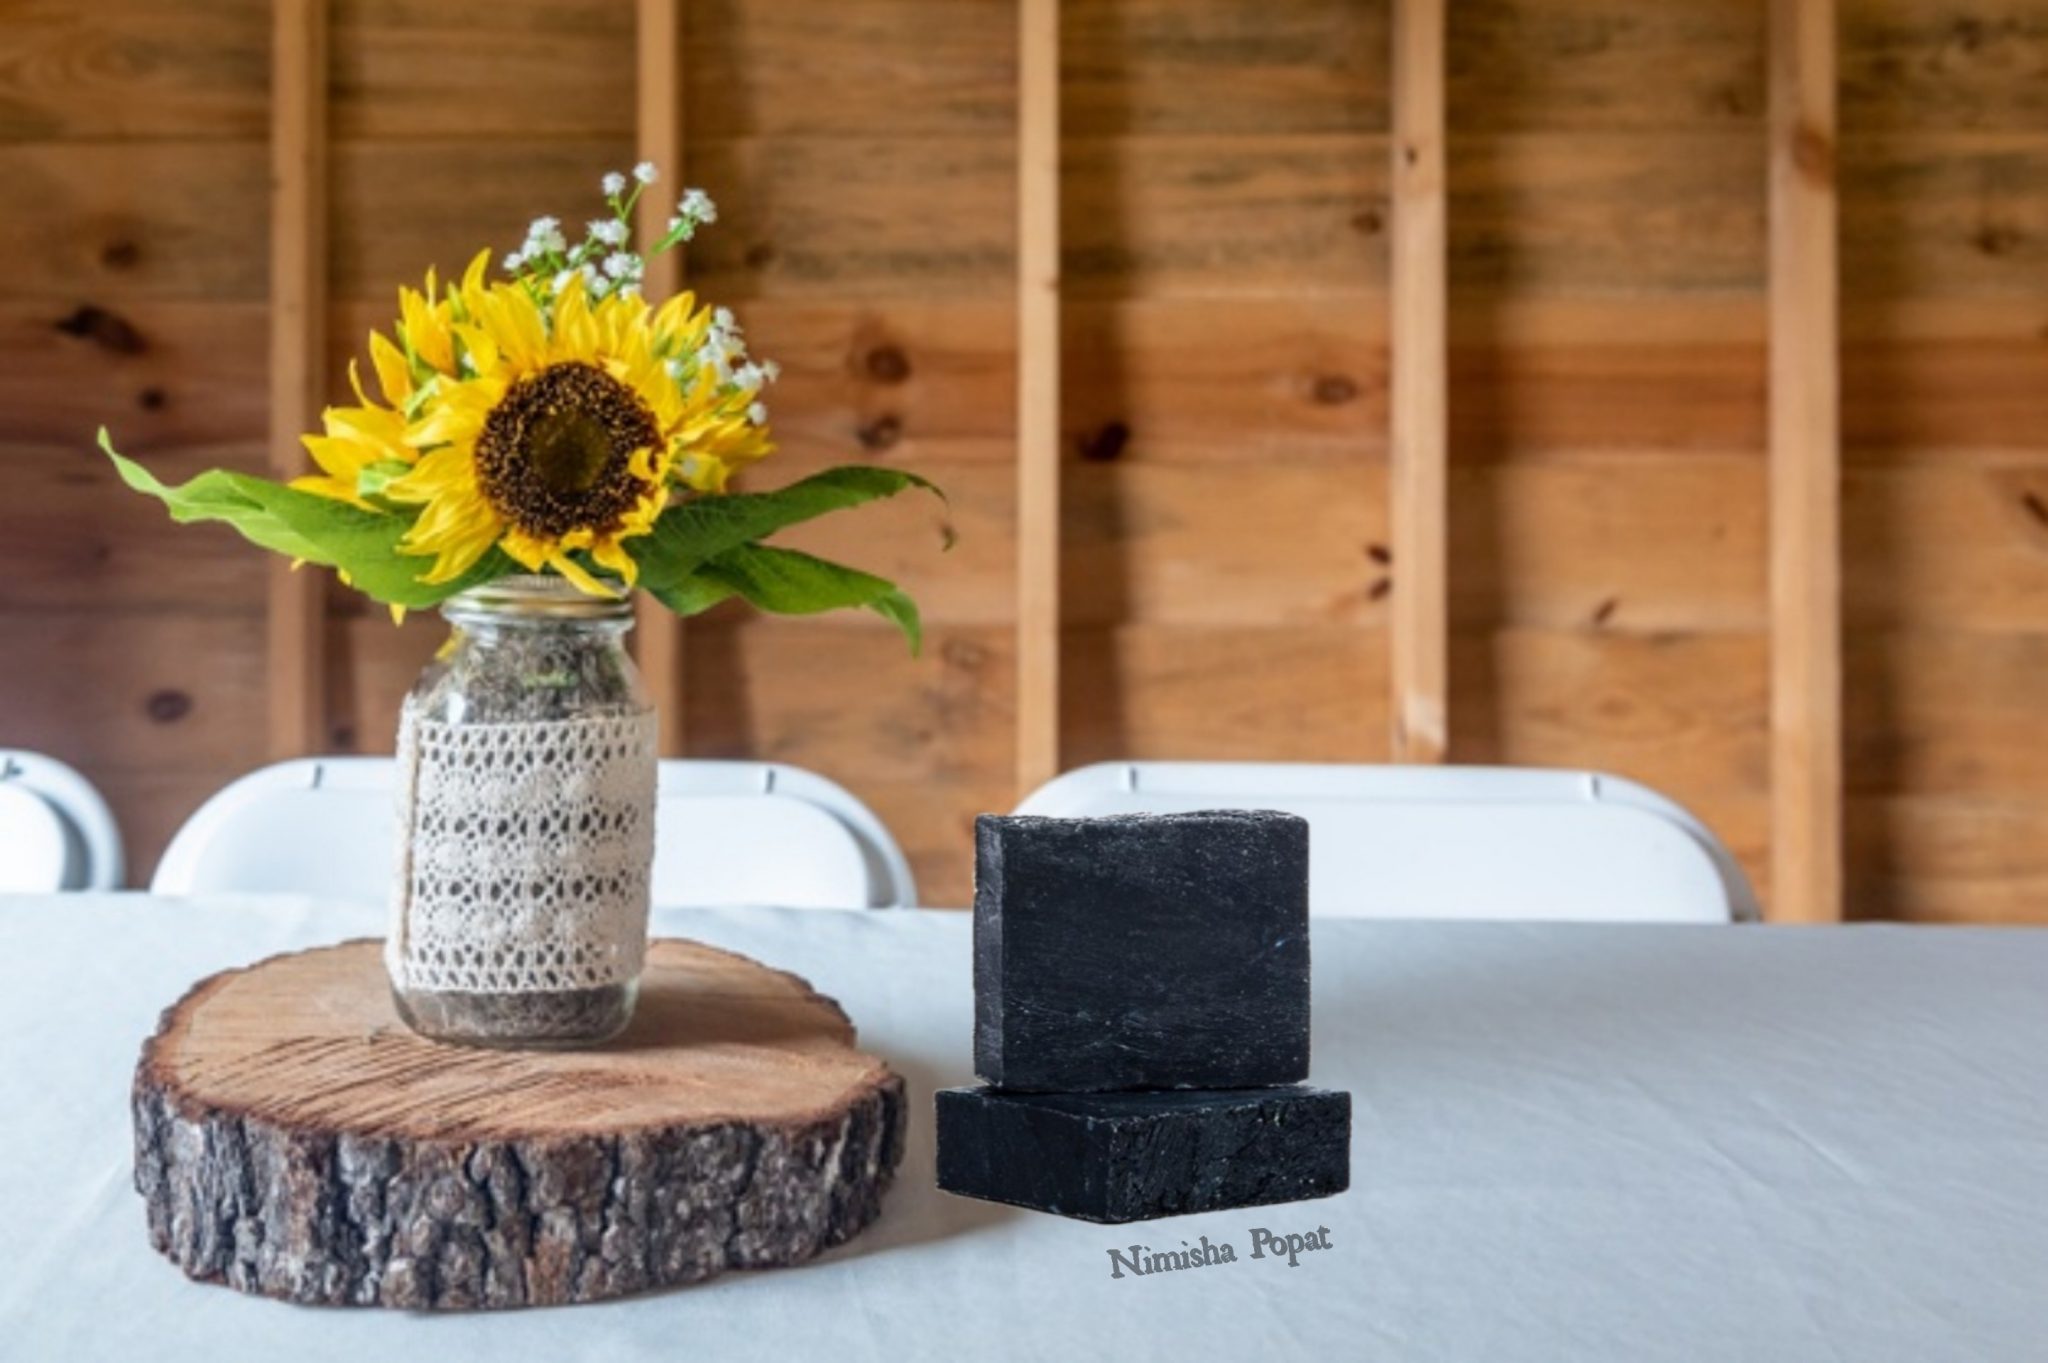 Deyga Organics charcoal bath soap review